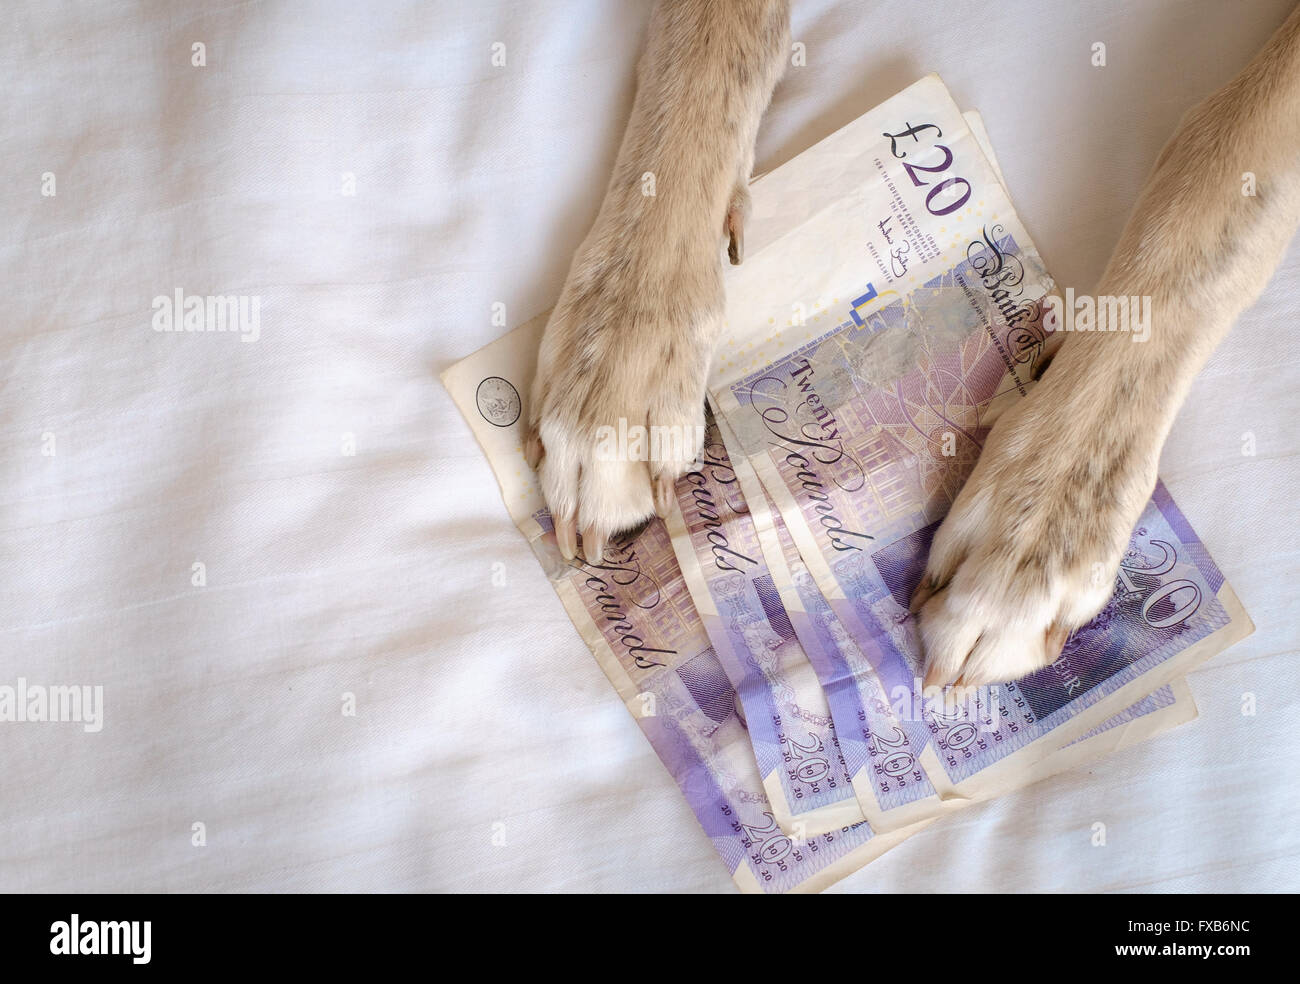 Dog paws holding many twenty pound notes Stock Photo